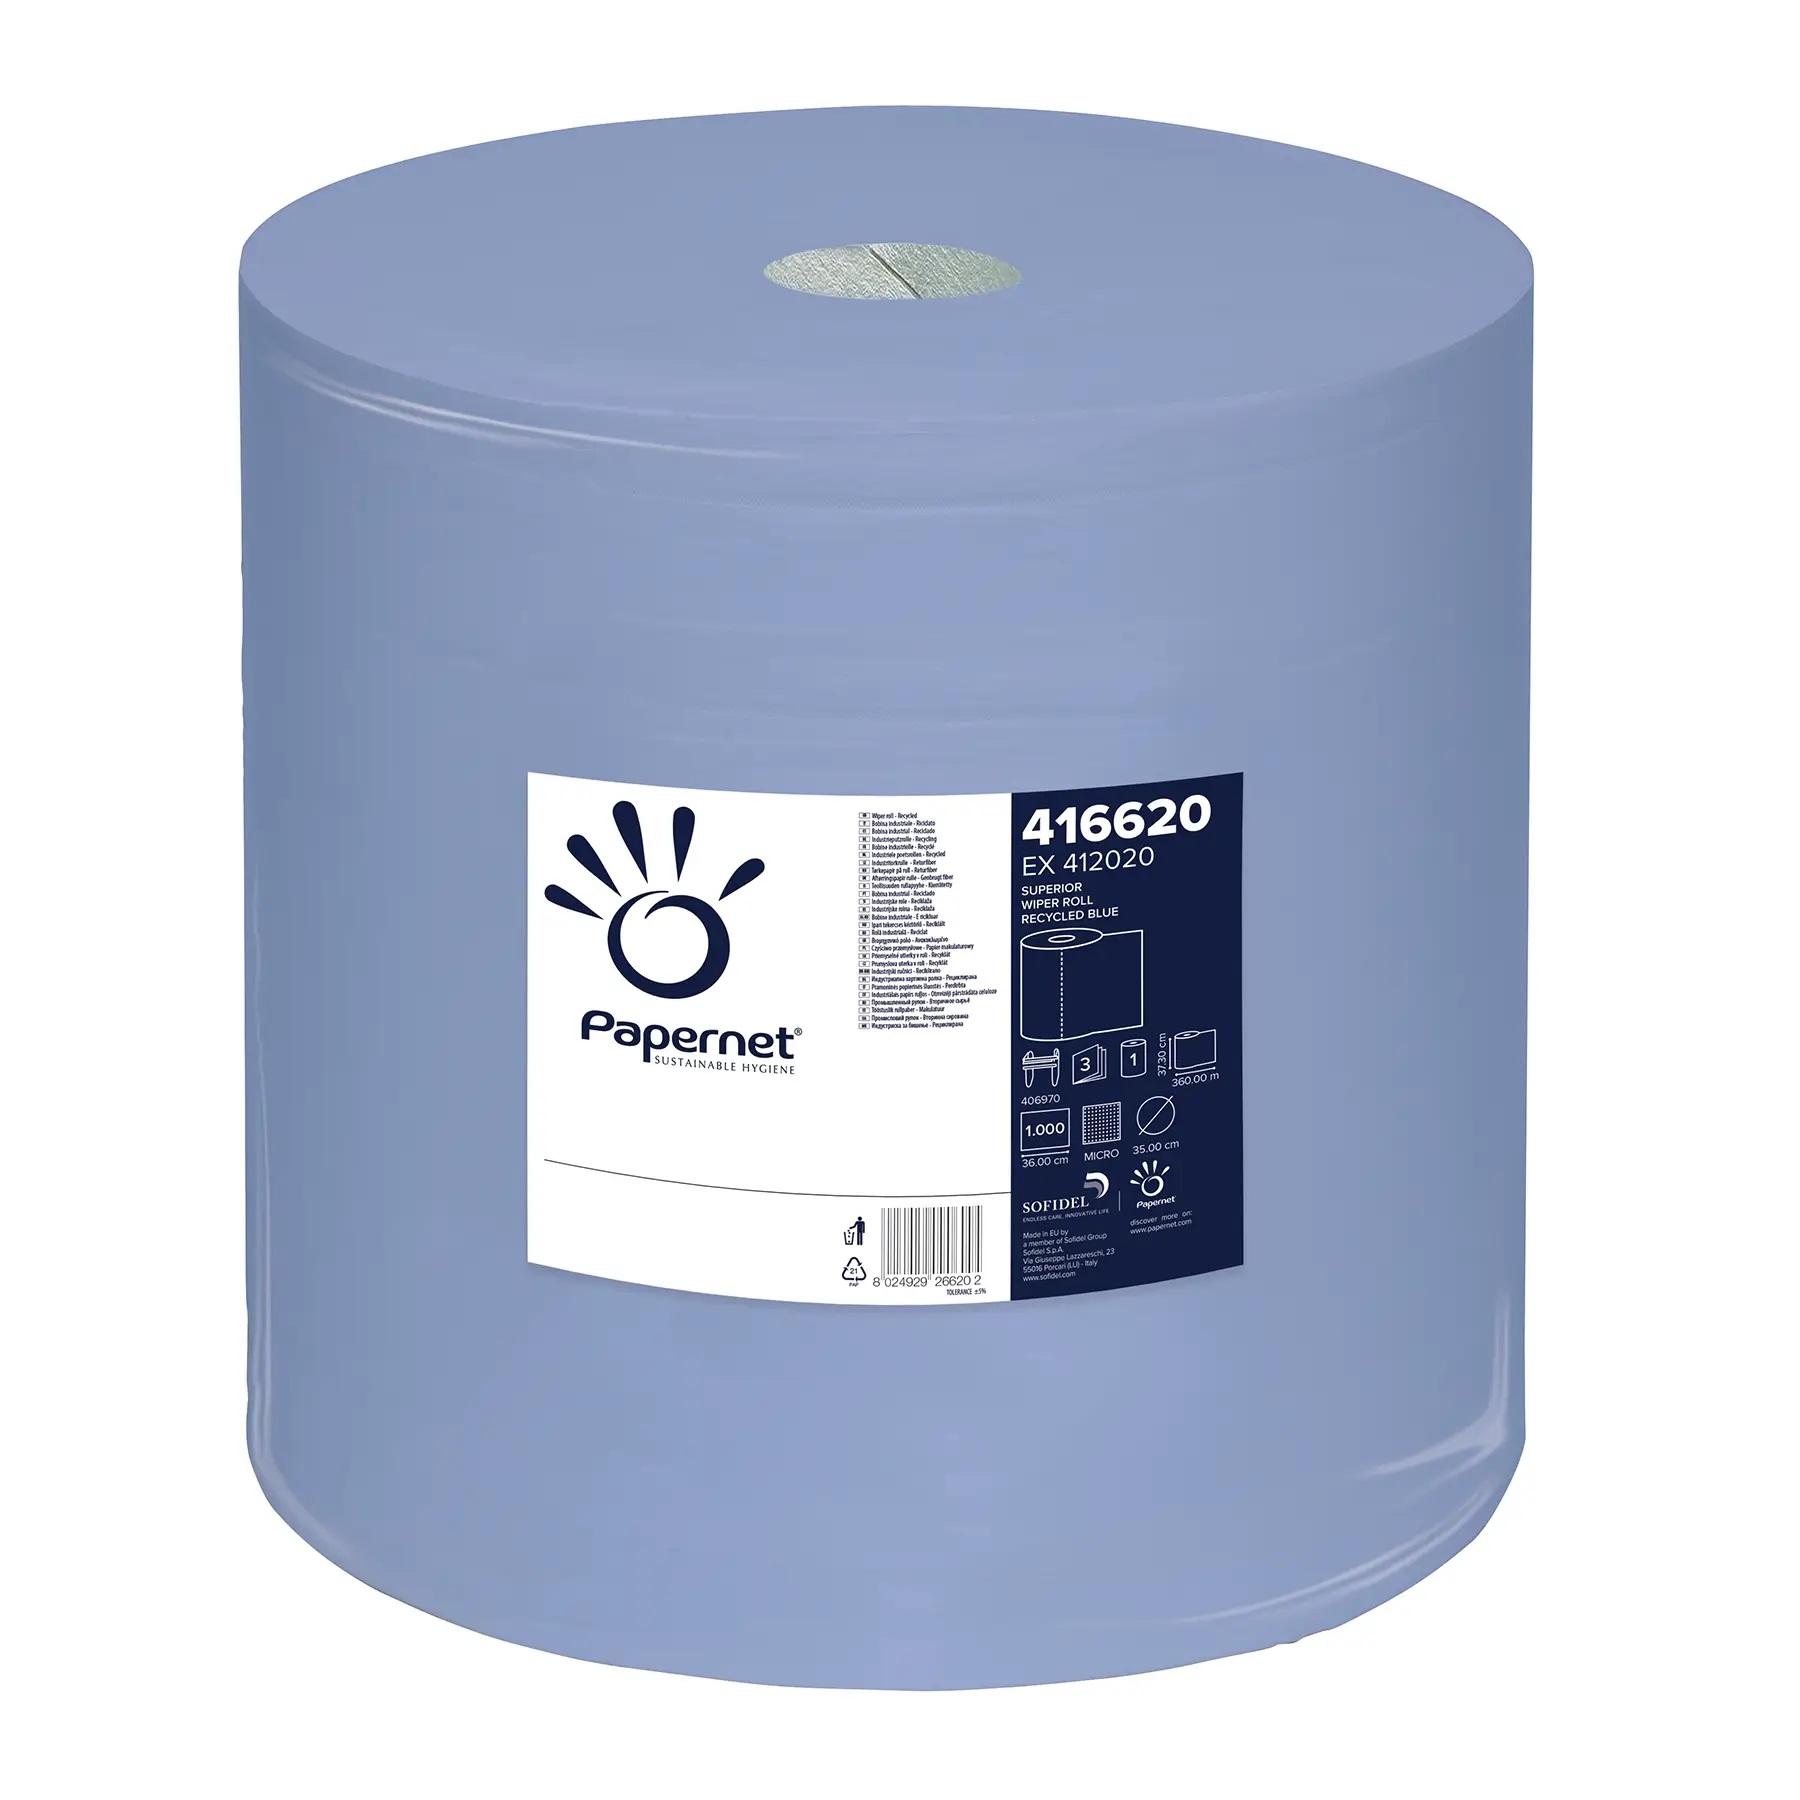 Papernet® tööstuslik pühkepaber 360m, 3x sinine, kastis: 1rull